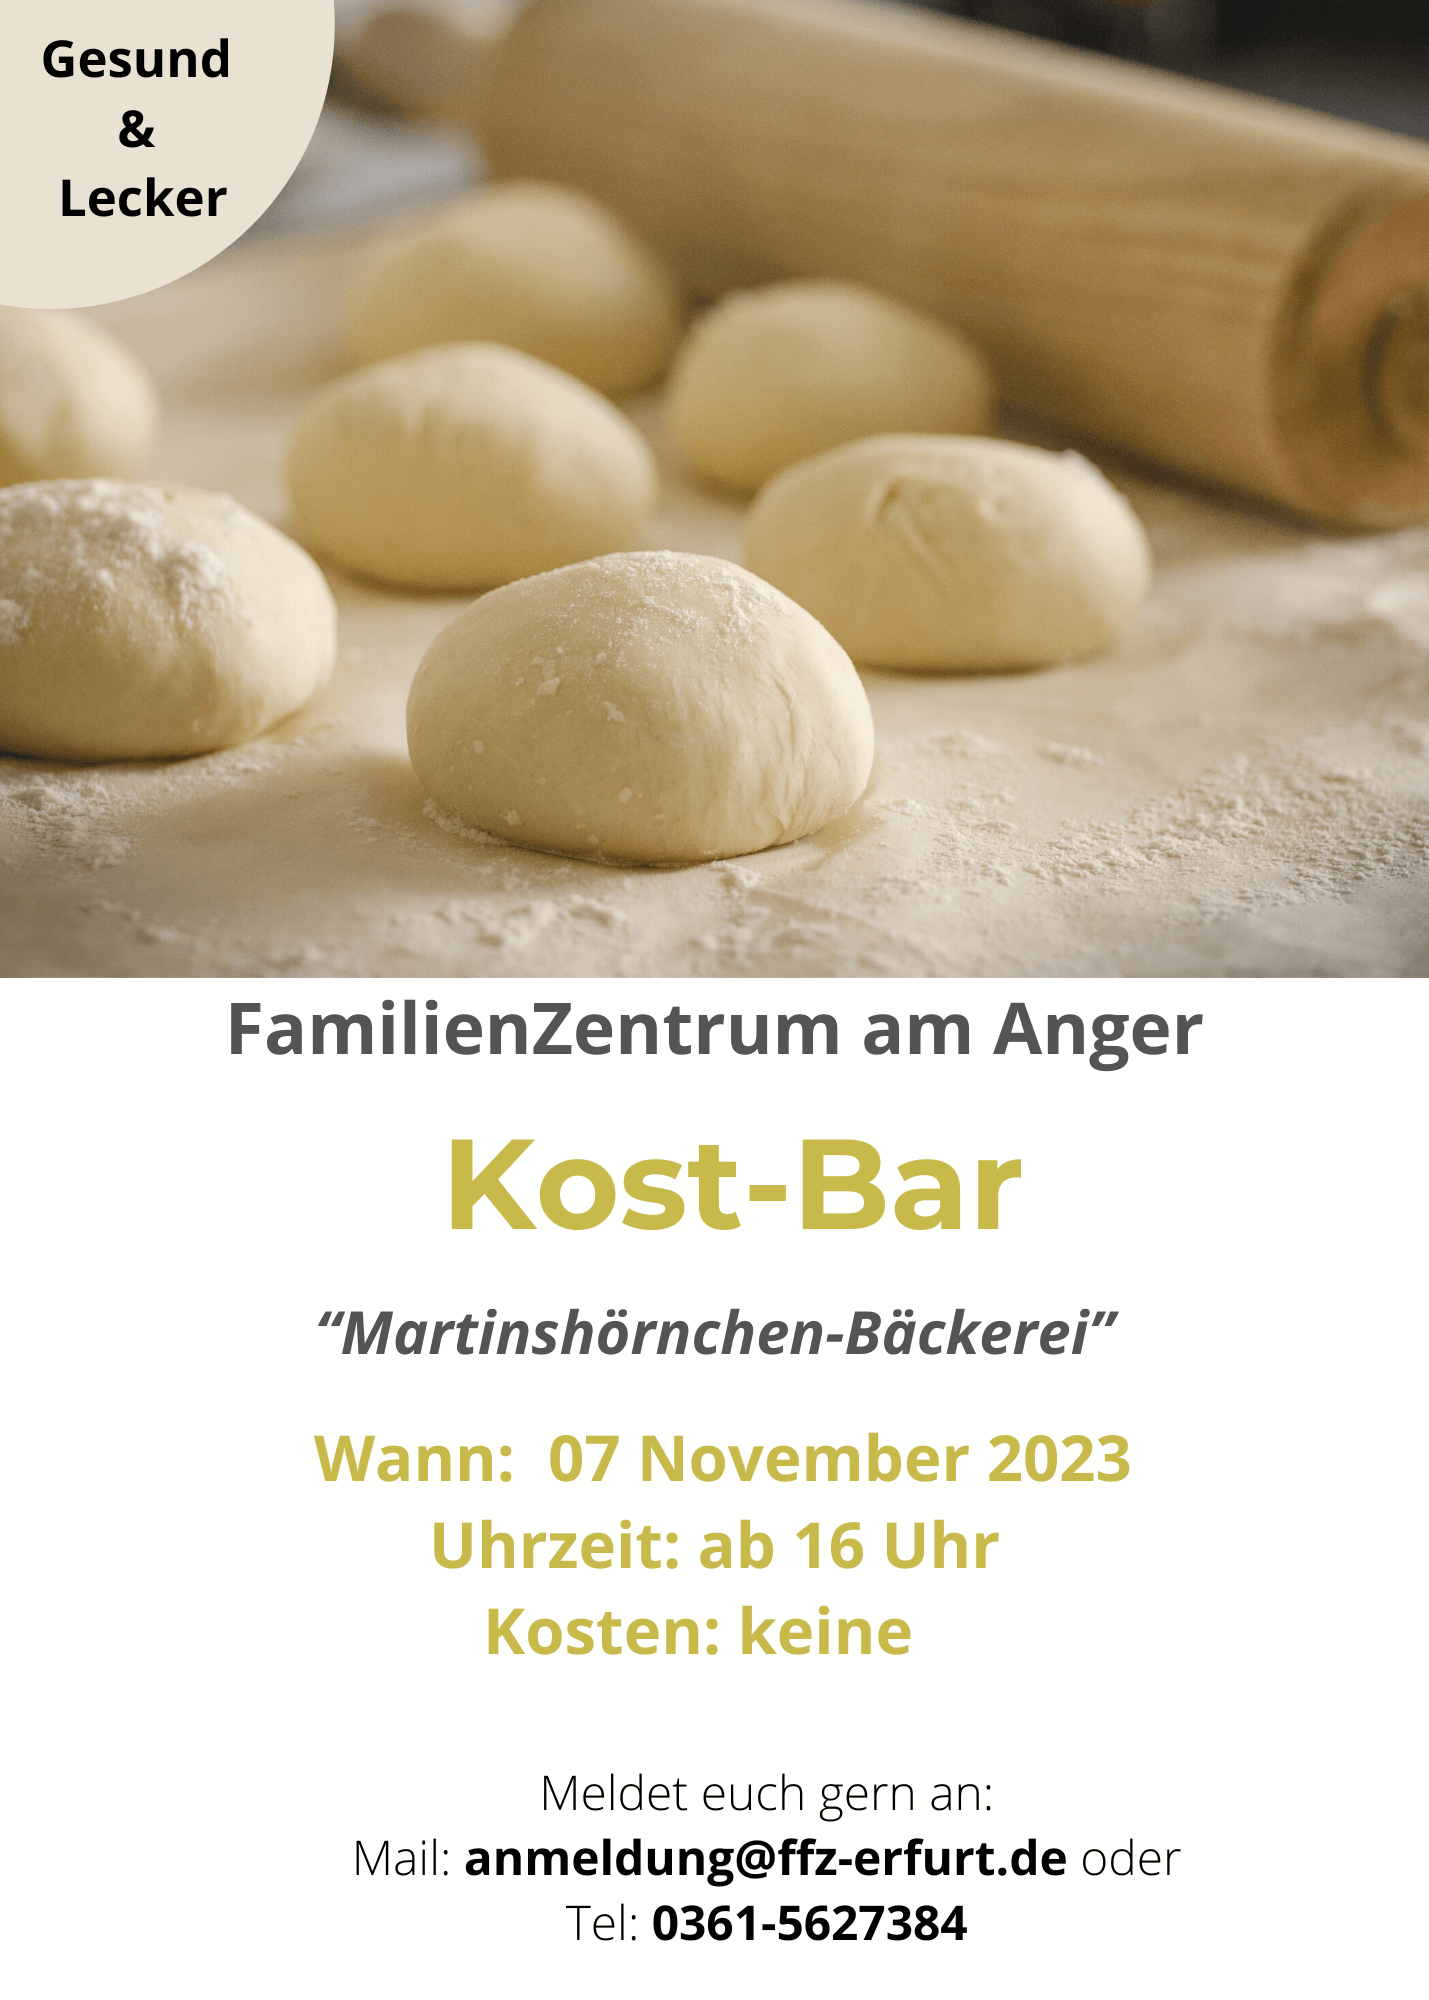 Kost- Bar Spezial Martinshörnchen-Bäckerei 07.11.2023